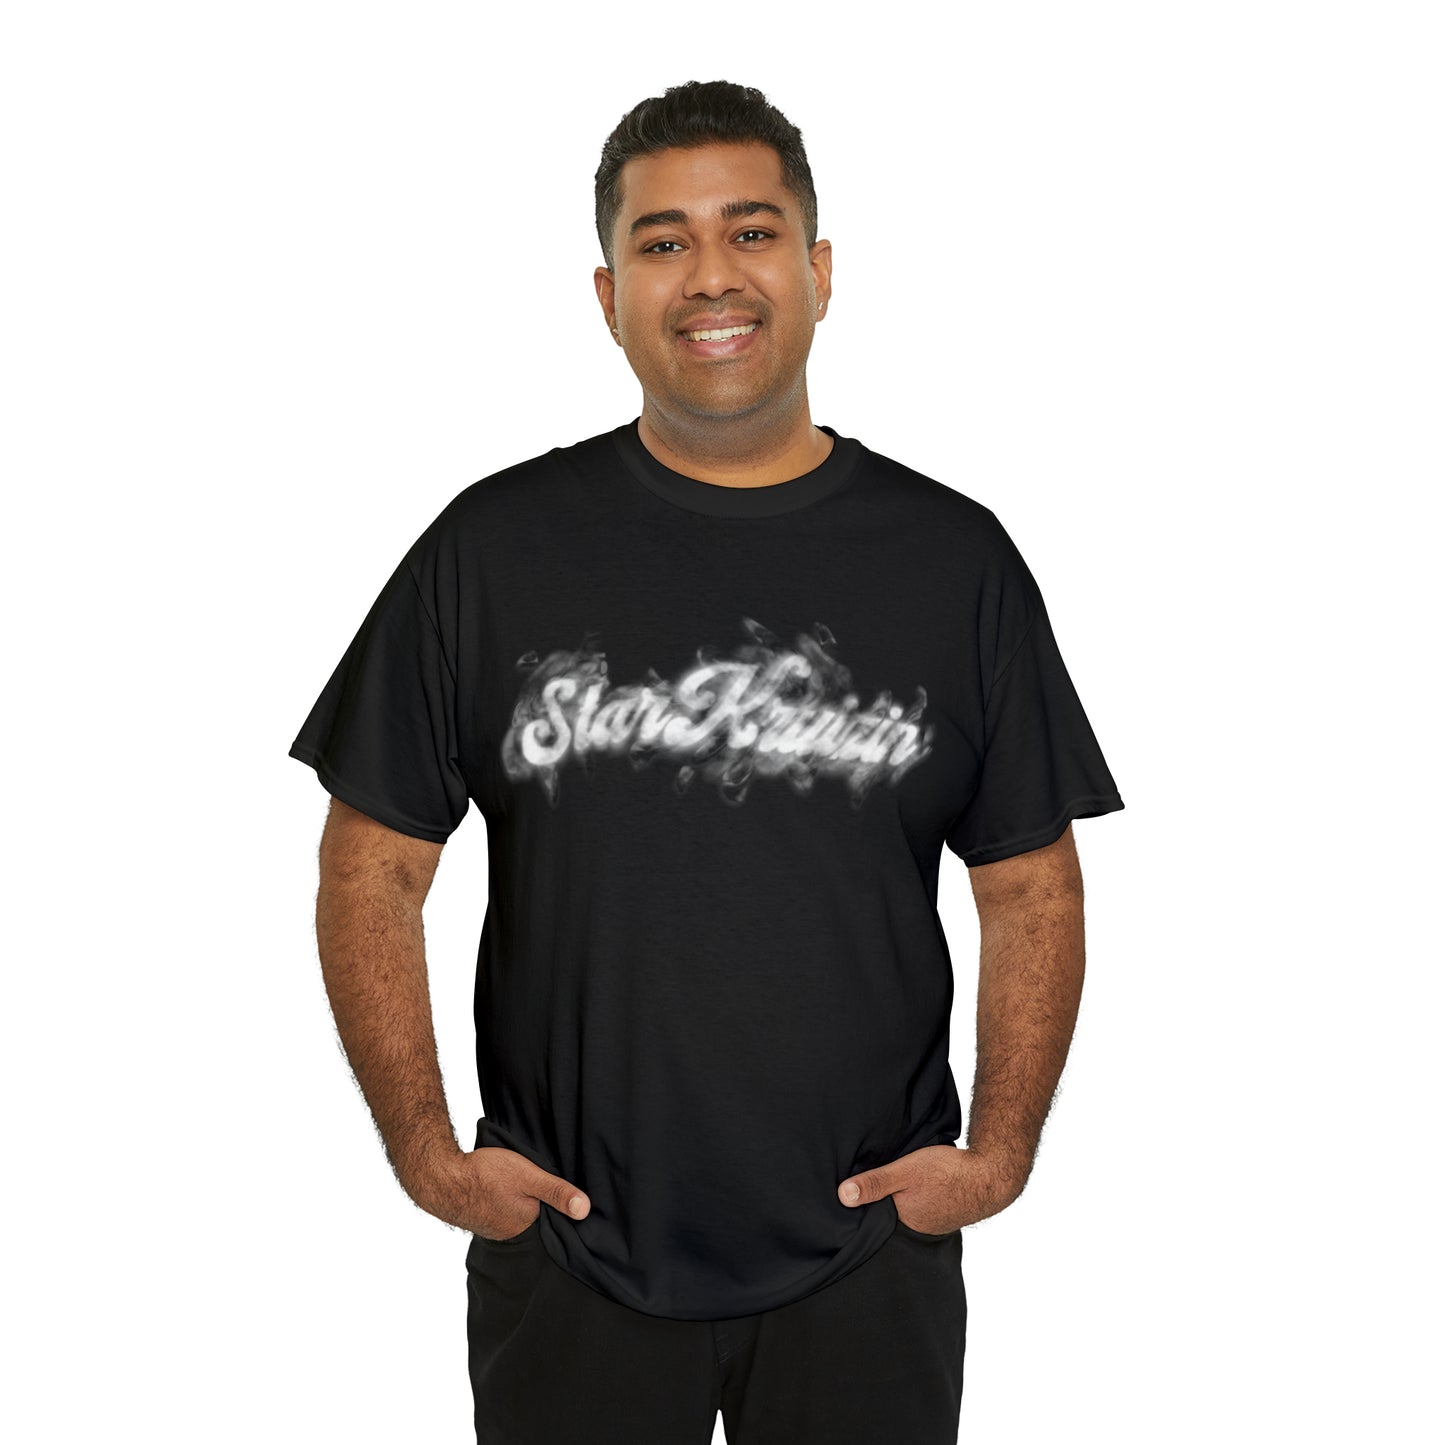 StarKruizin Smoke T-Shirt